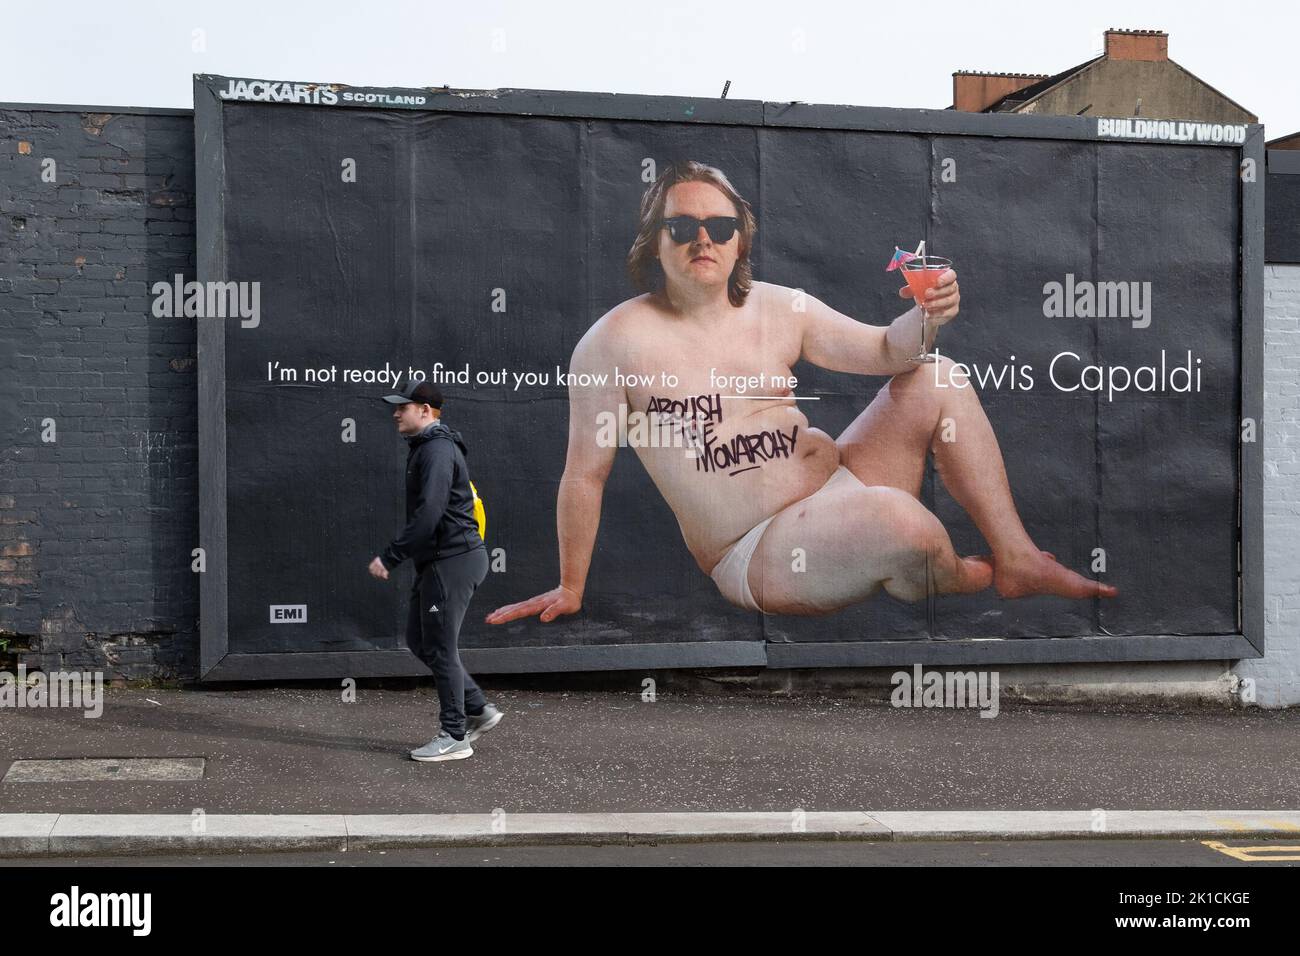 Glasgow, Escocia, Reino Unido - Abolir el graffiti de Monarchy en cartelera de Lewis Capaldi Crédito: Kay Roxby/Alamy Live News Foto de stock